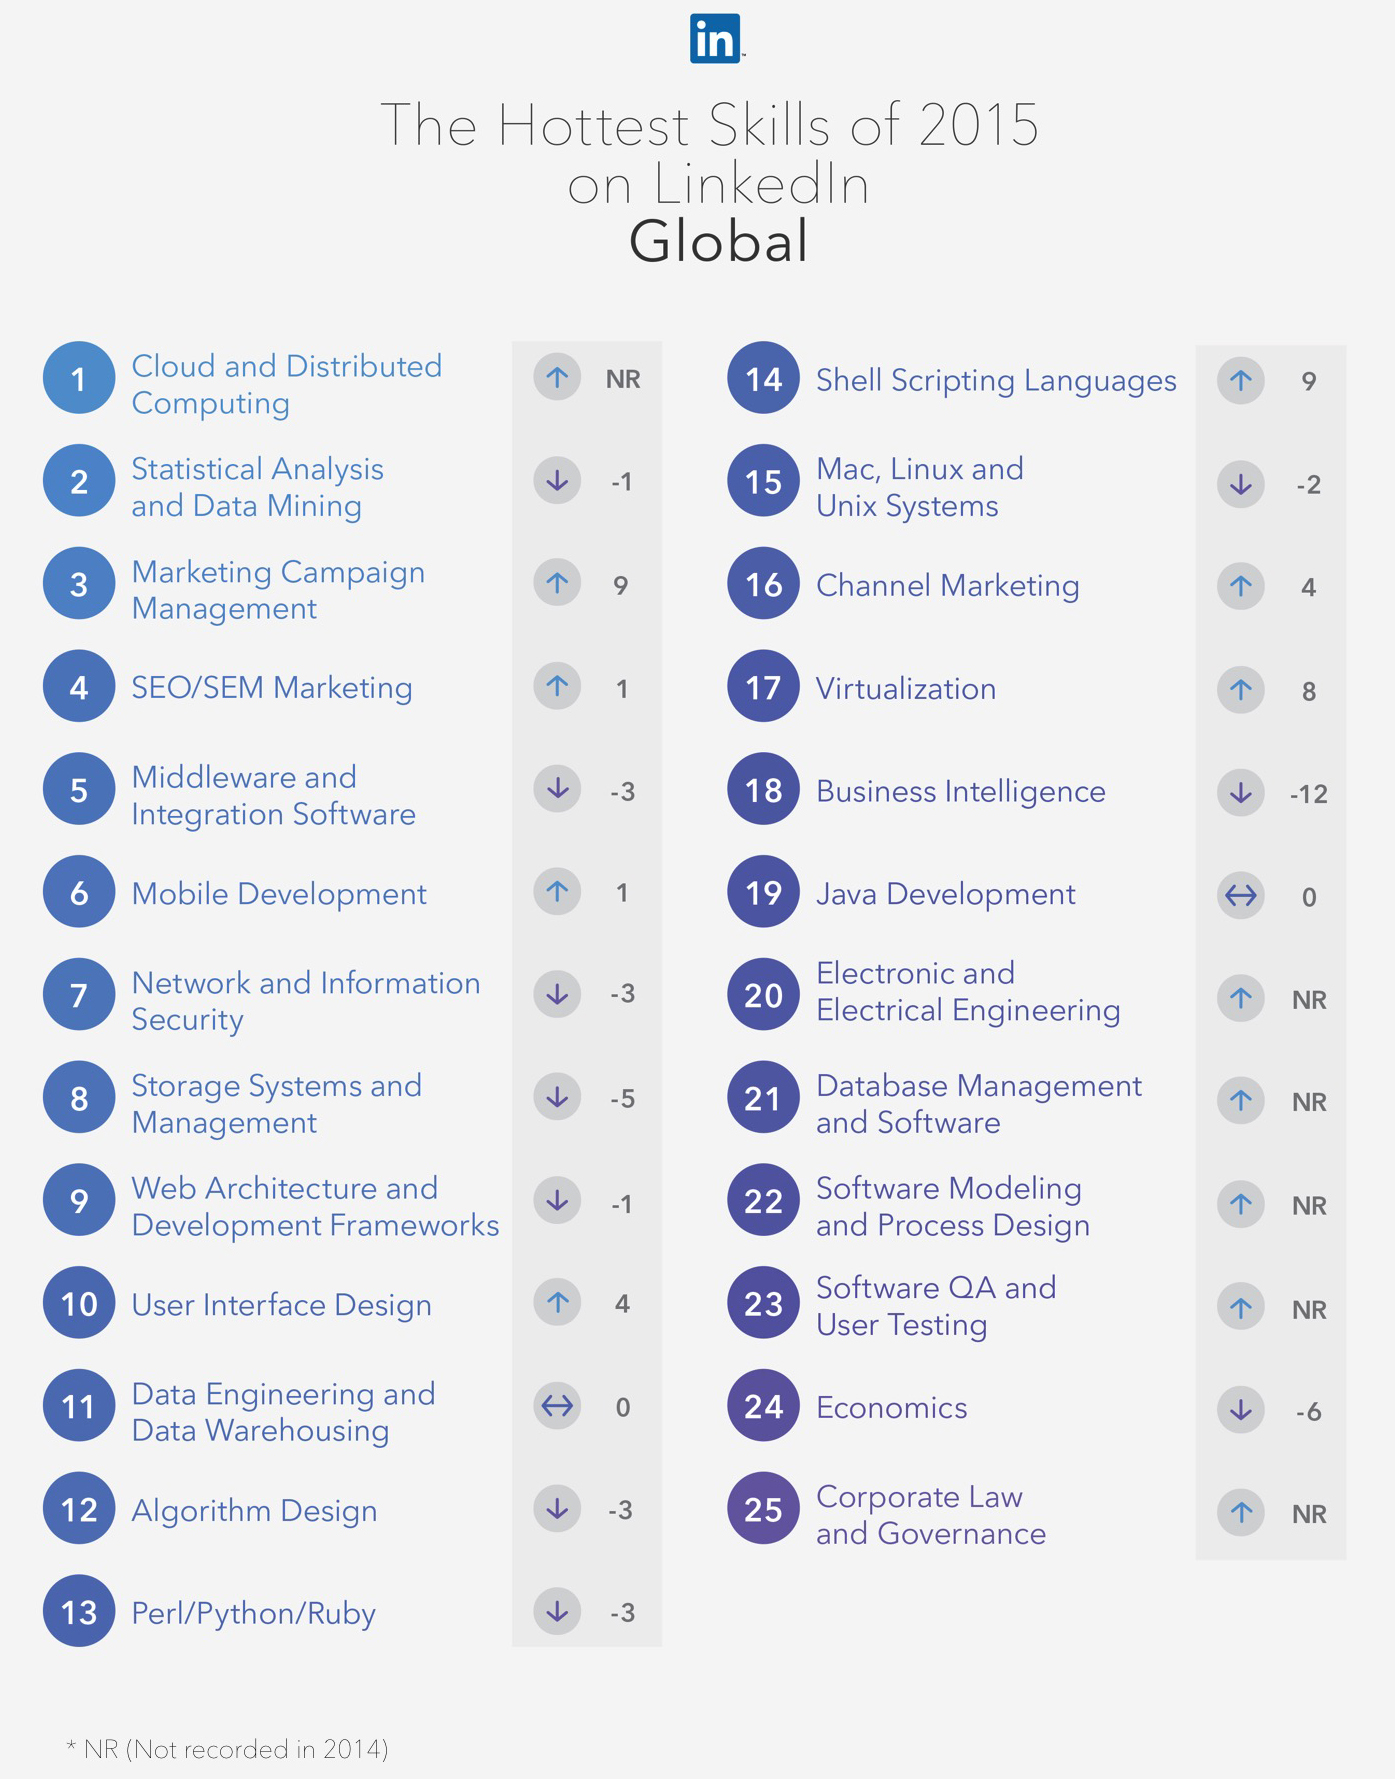 2015 LinkedIn list of hottest skills